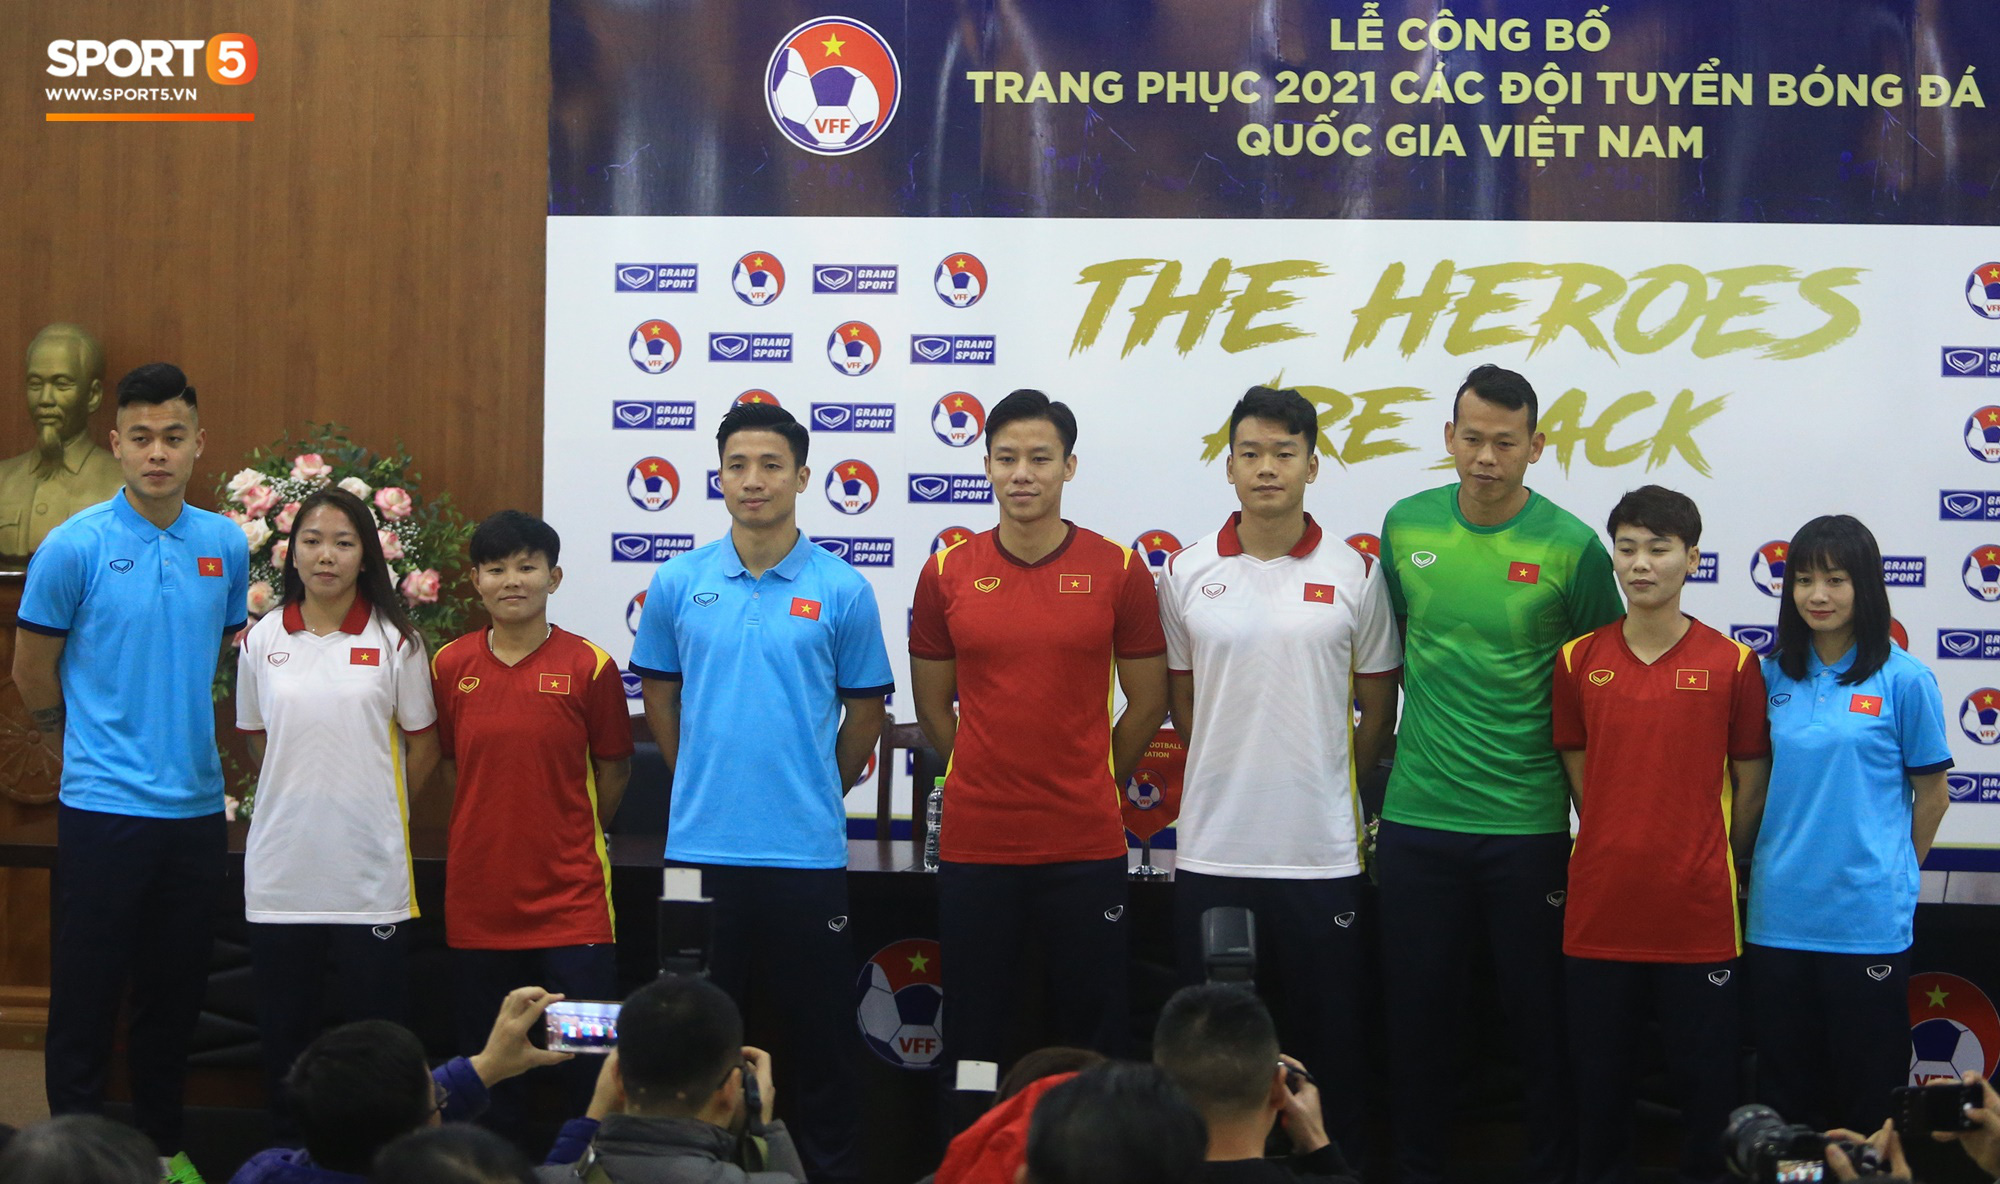 Ra mắt áo thi đấu chính thức của Đội tuyển Quốc gia Việt Nam năm 2021 - Ảnh 1.